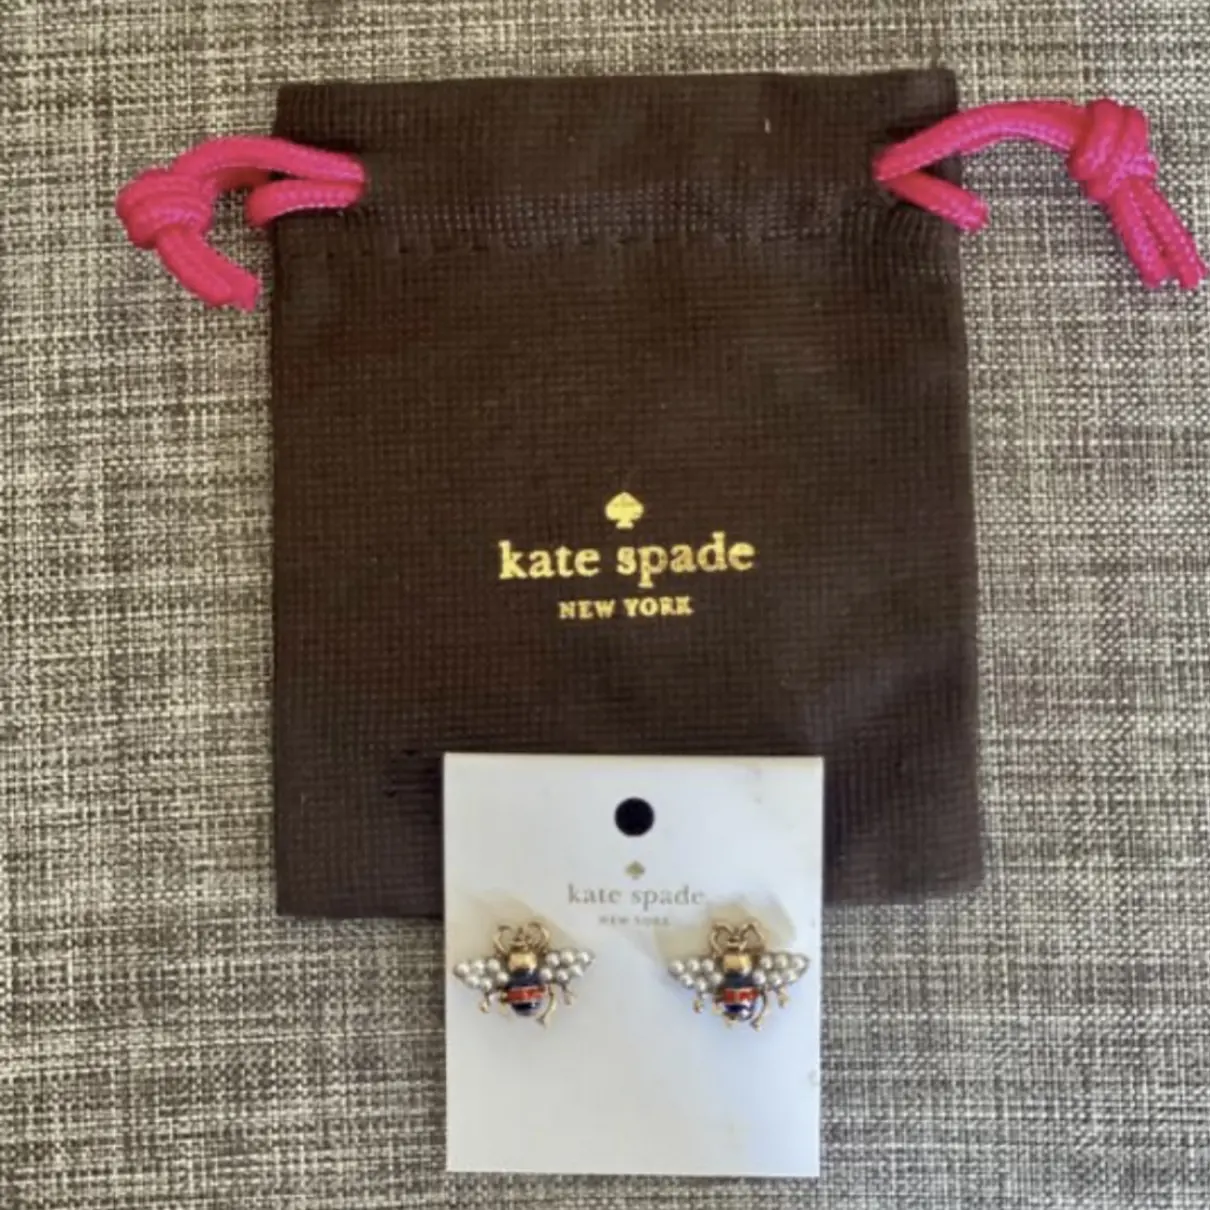 Buy Kate Spade Crystal earrings online